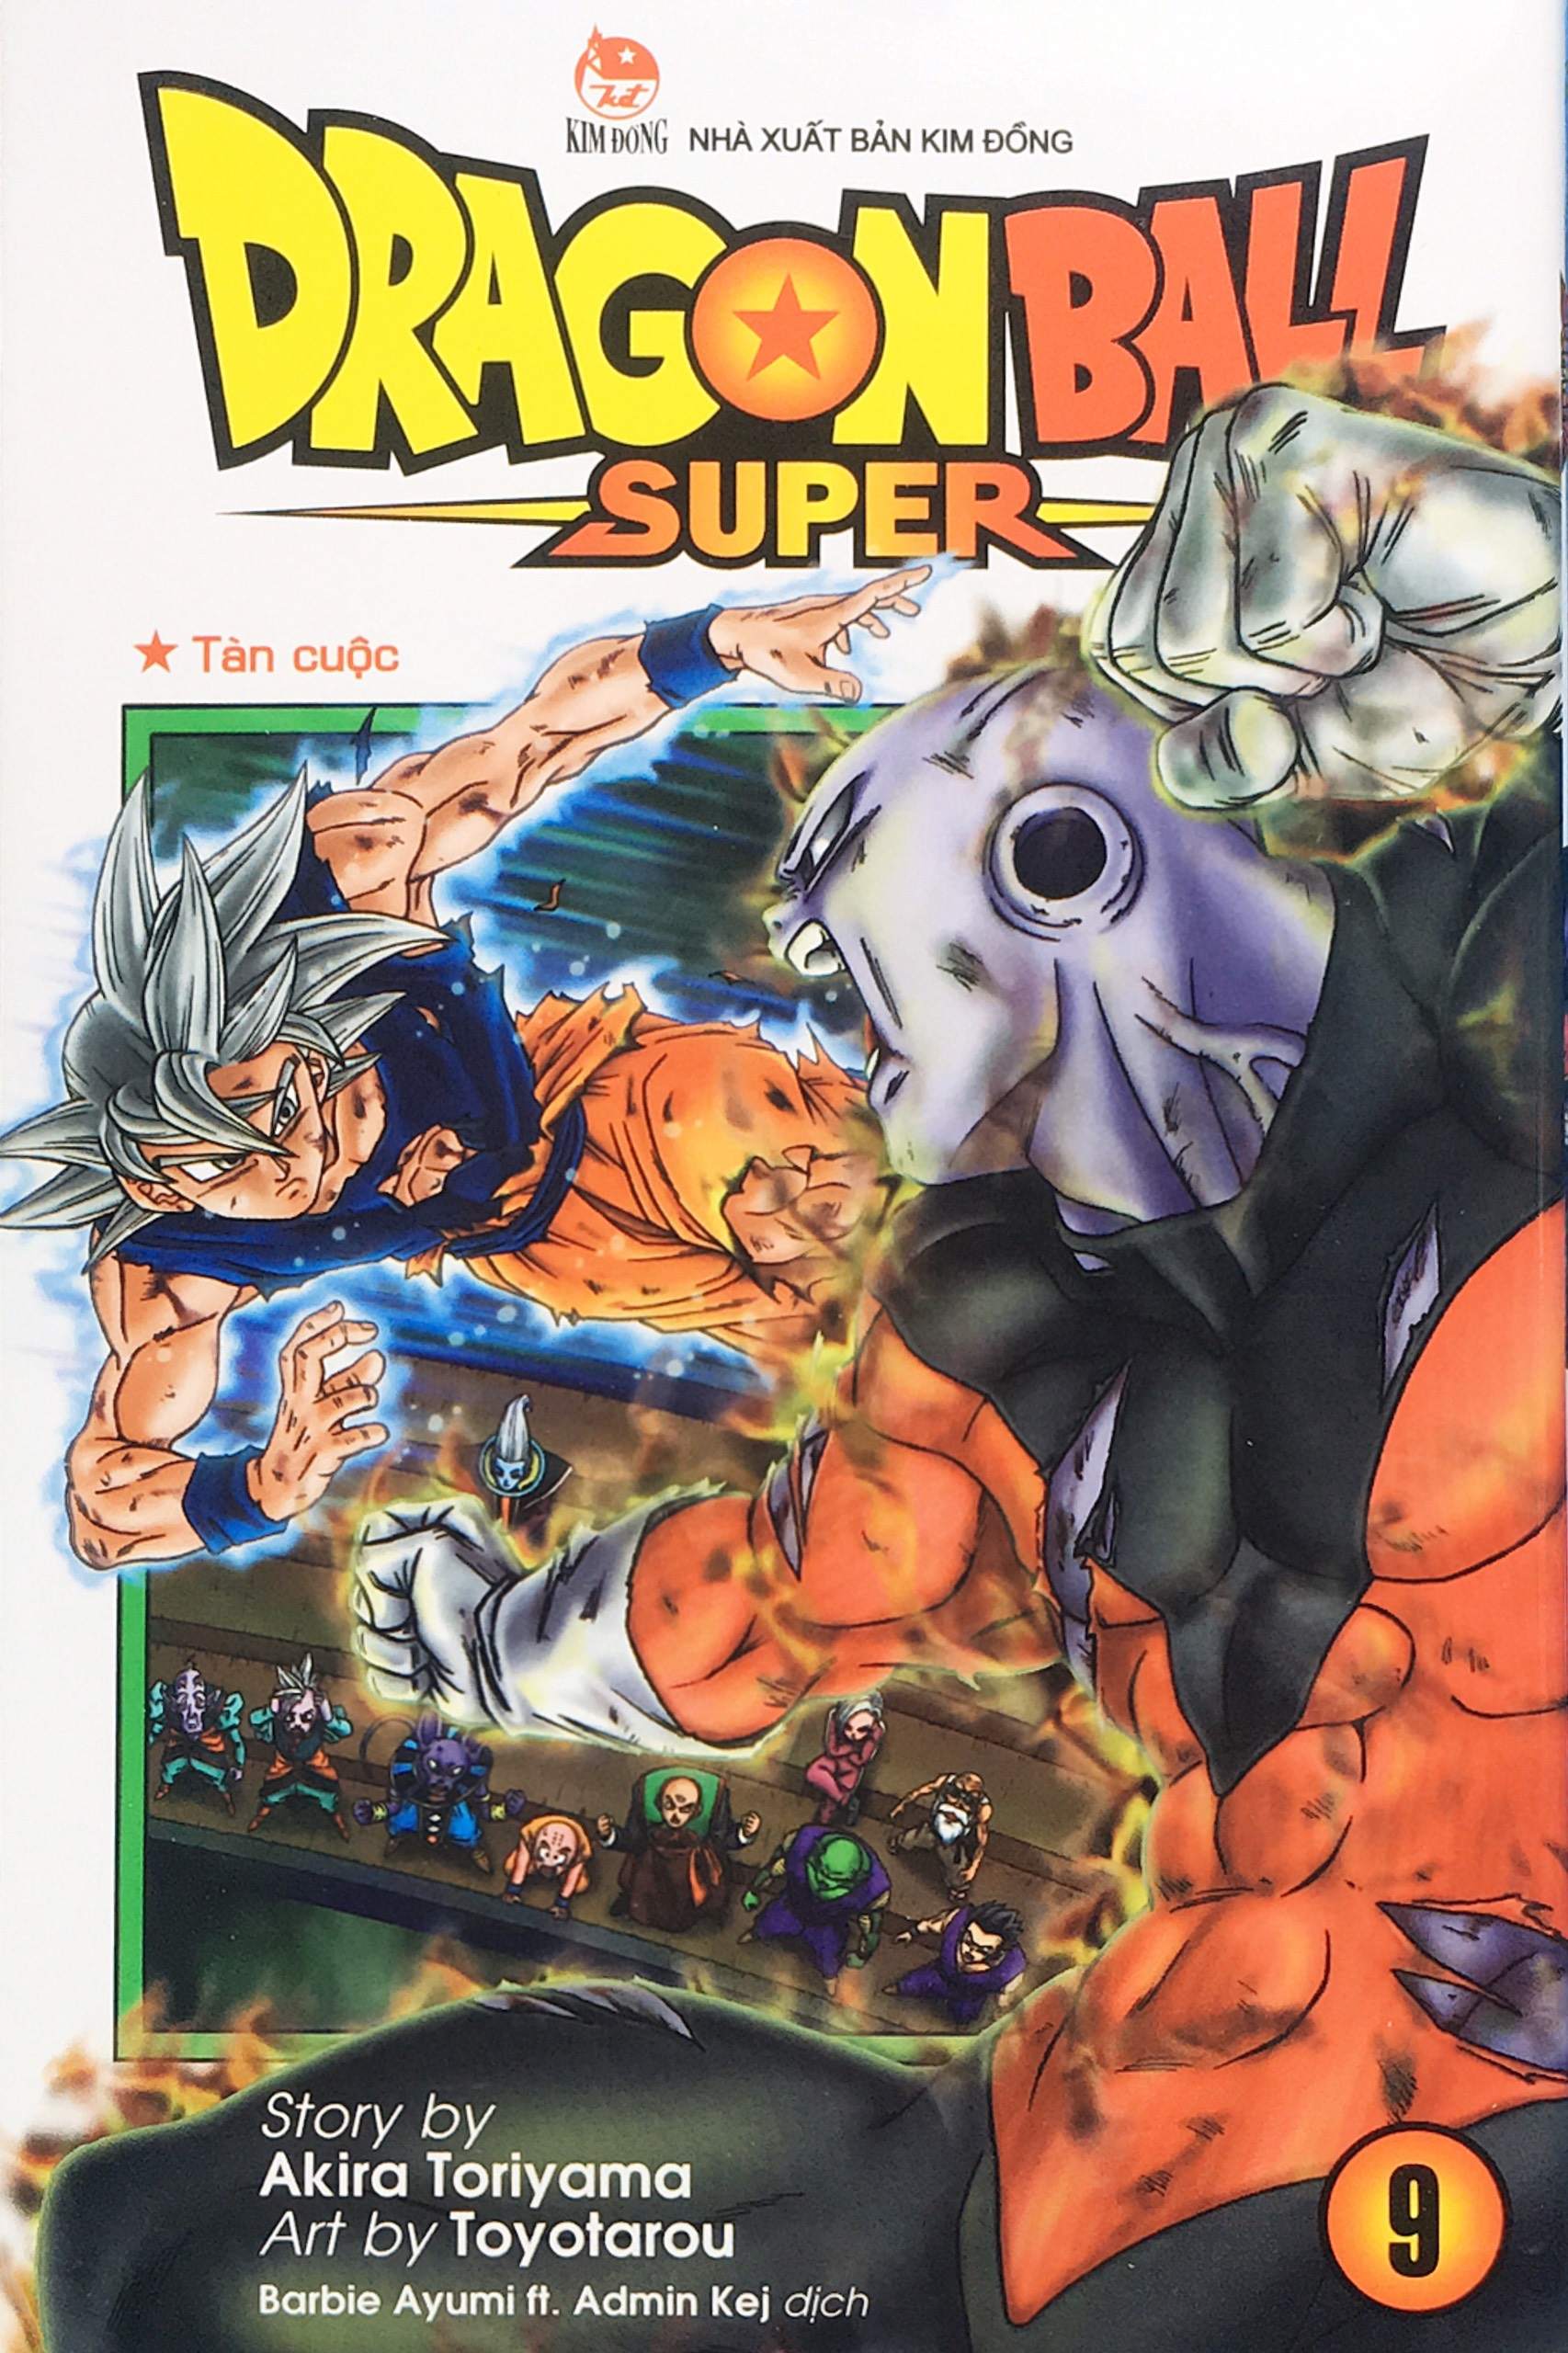 Dragon Ball Super -Trọn bộ 14 tập - (Từ tập 1 đến tập 14)